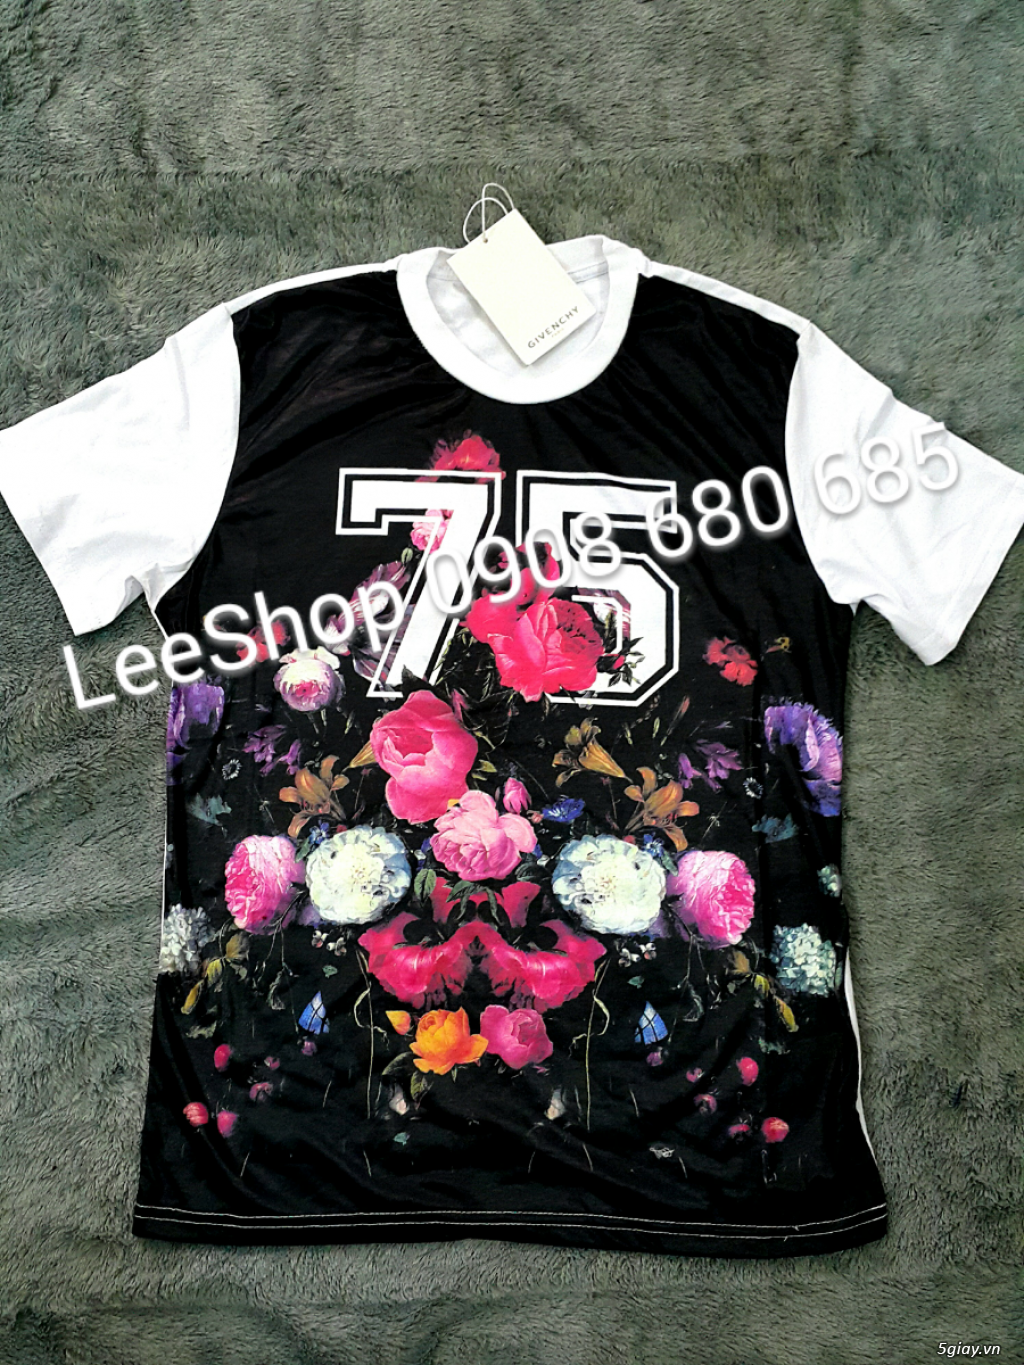 LeeShop_Chuyên quần áo thời trang - giá tốt nhất 5giay.vn - 25